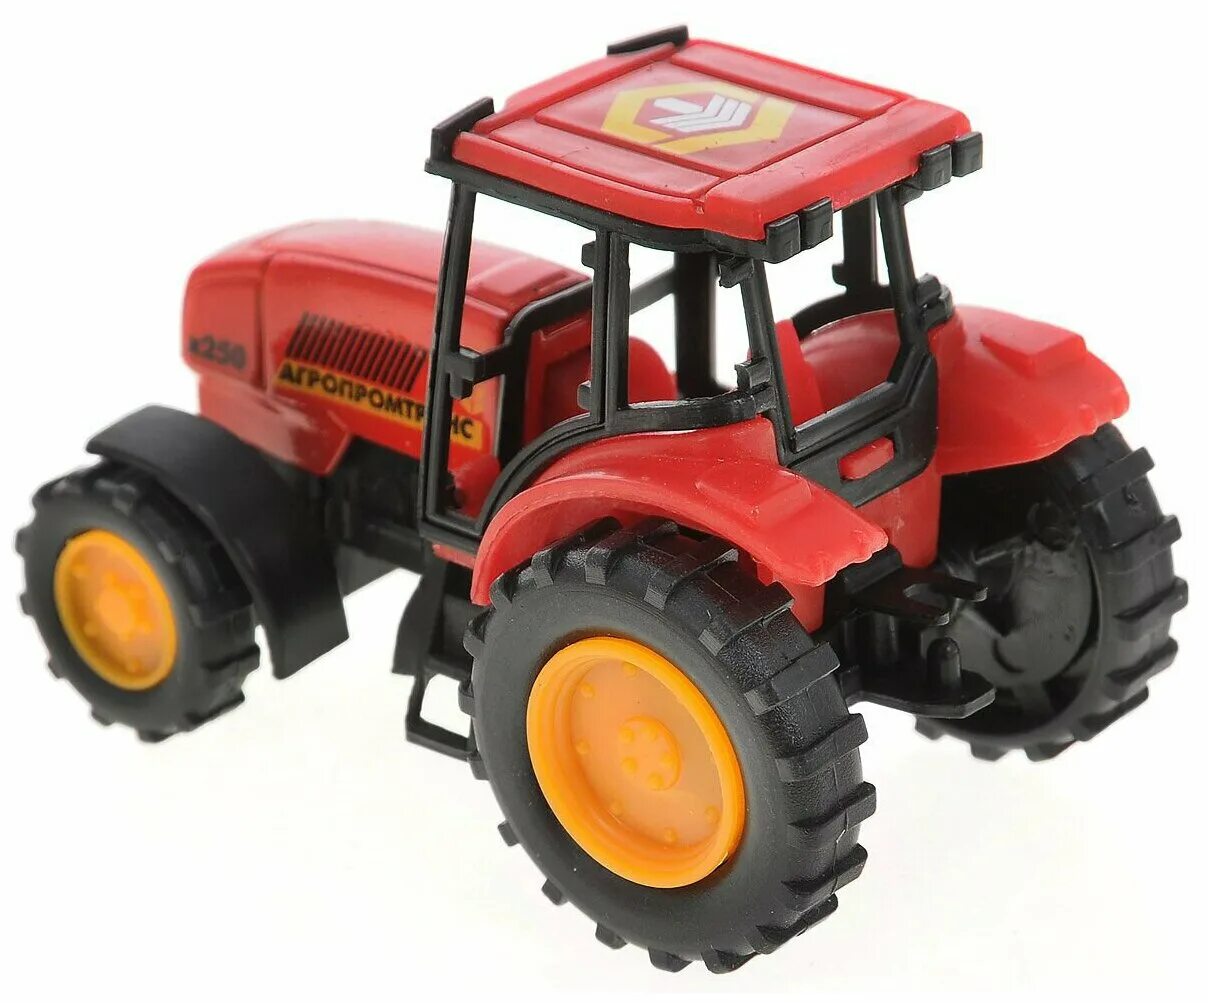 Купить трактор петербург. Трактор Технопарк Агропромтранс (20119-r) 7 см. Игрушки трактор красный Тайо. Игрушка трактор tractor красный. Игрушечные модели тракторов.